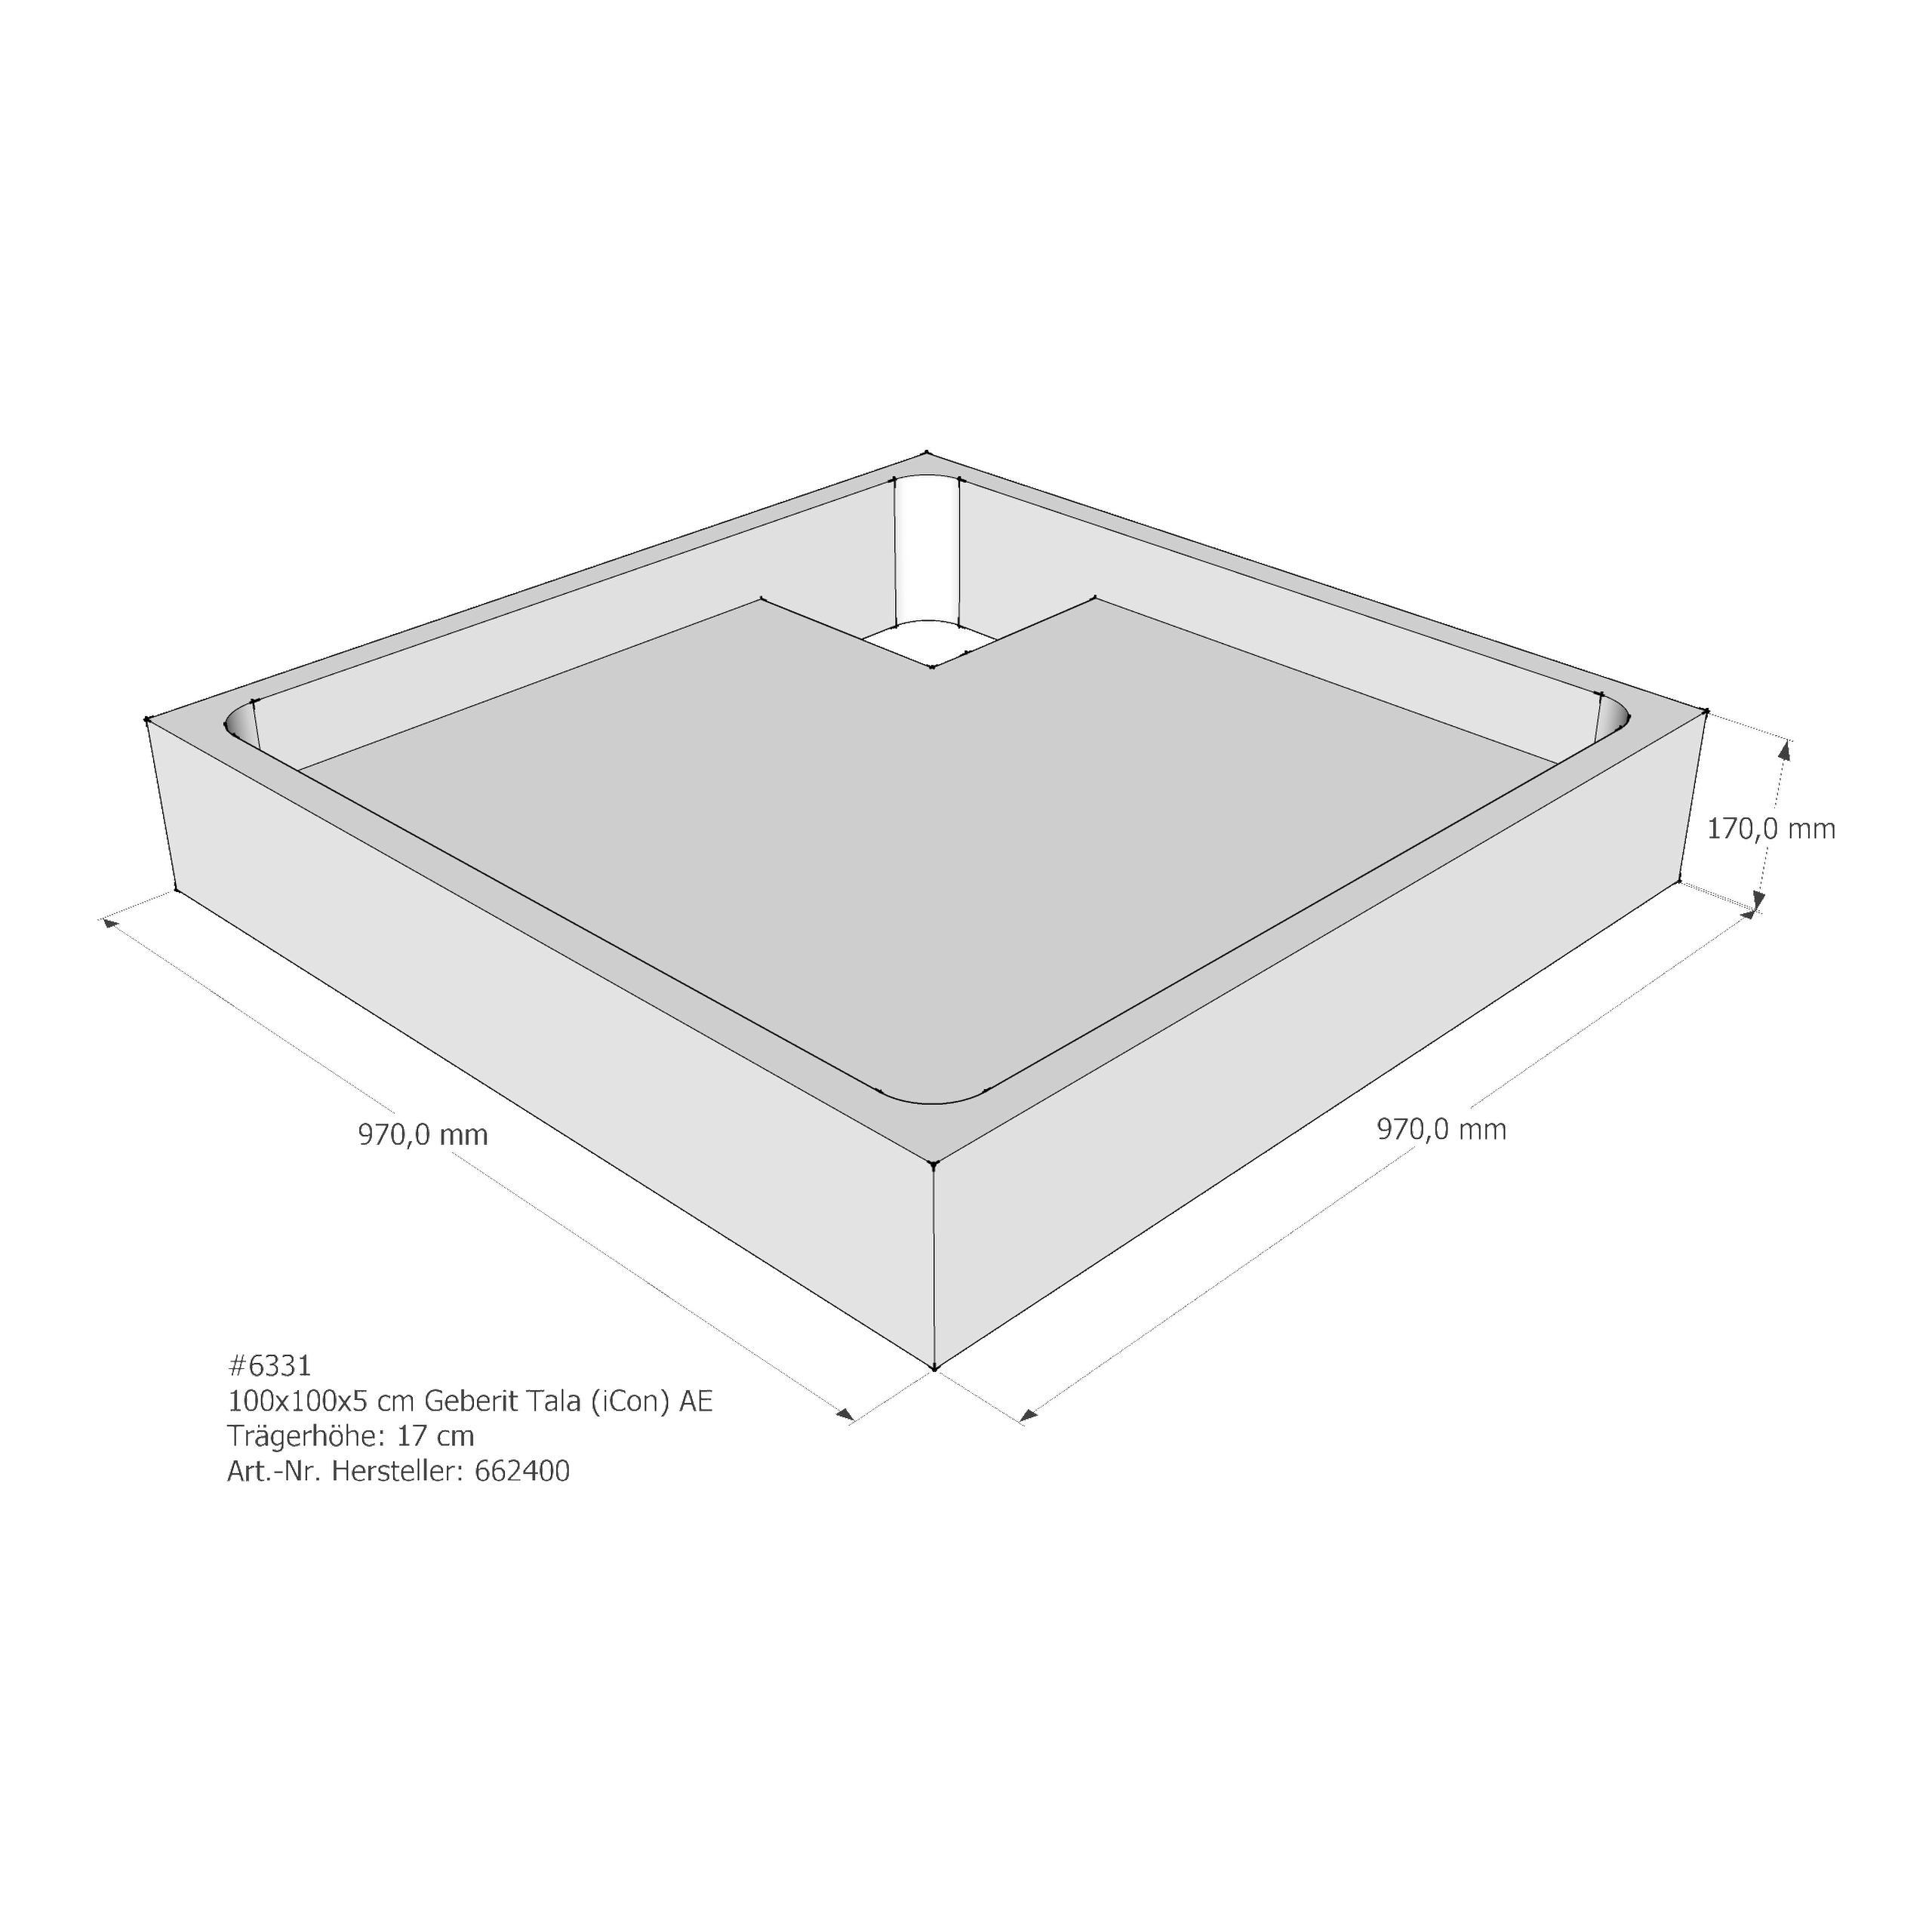 Duschwannenträger für Keramag Tala (iCon T50) 100 × 100 × 5 cm